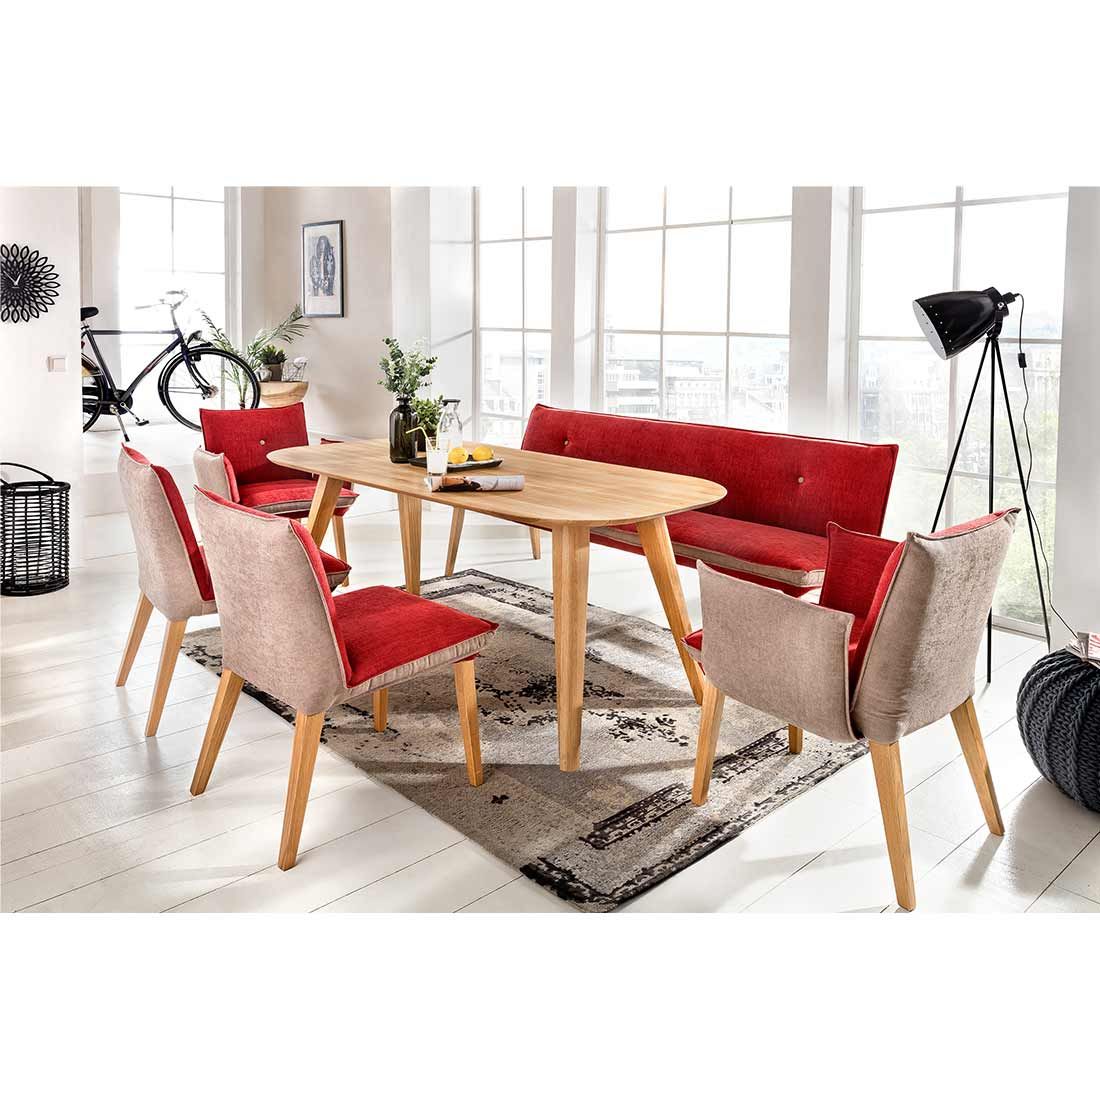 Standard Furniture Ottawa Esstisch 160x90cm